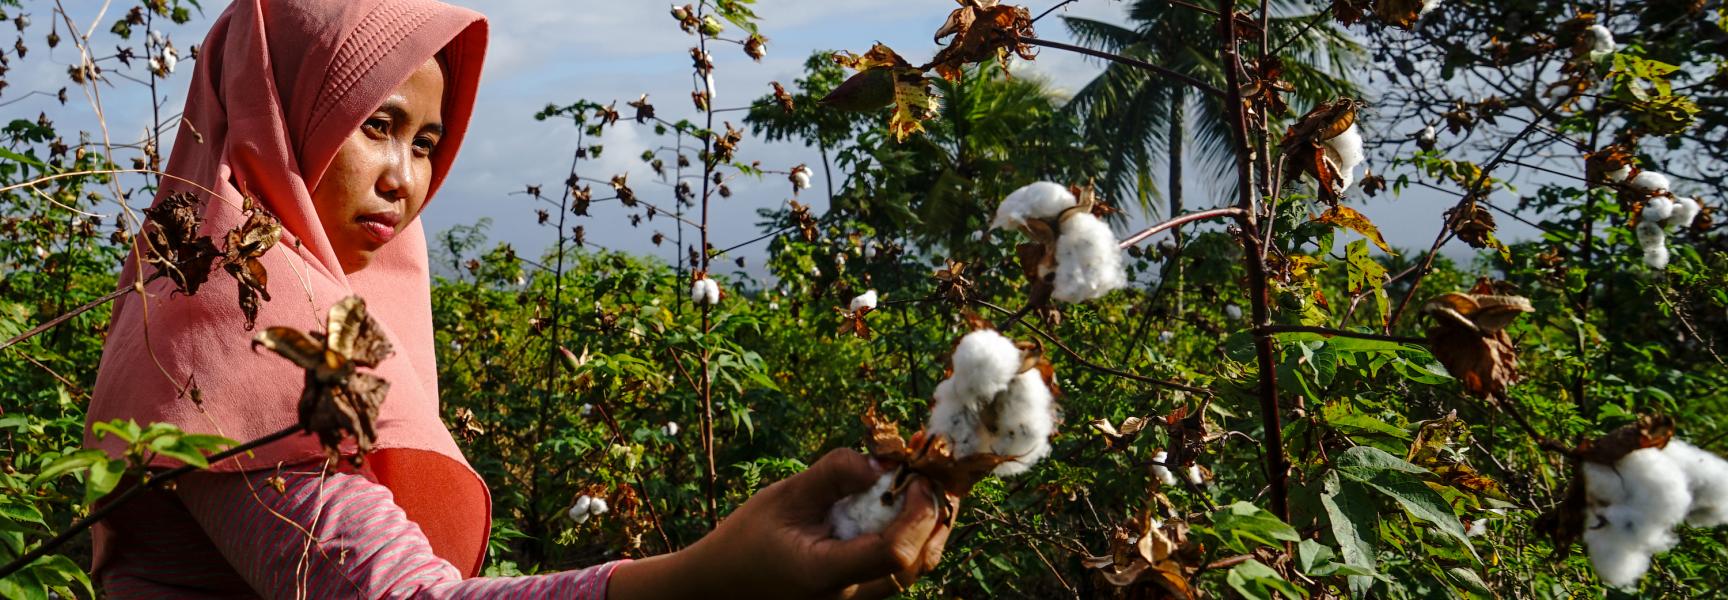 Une femme cueillant du coton en Indonésie